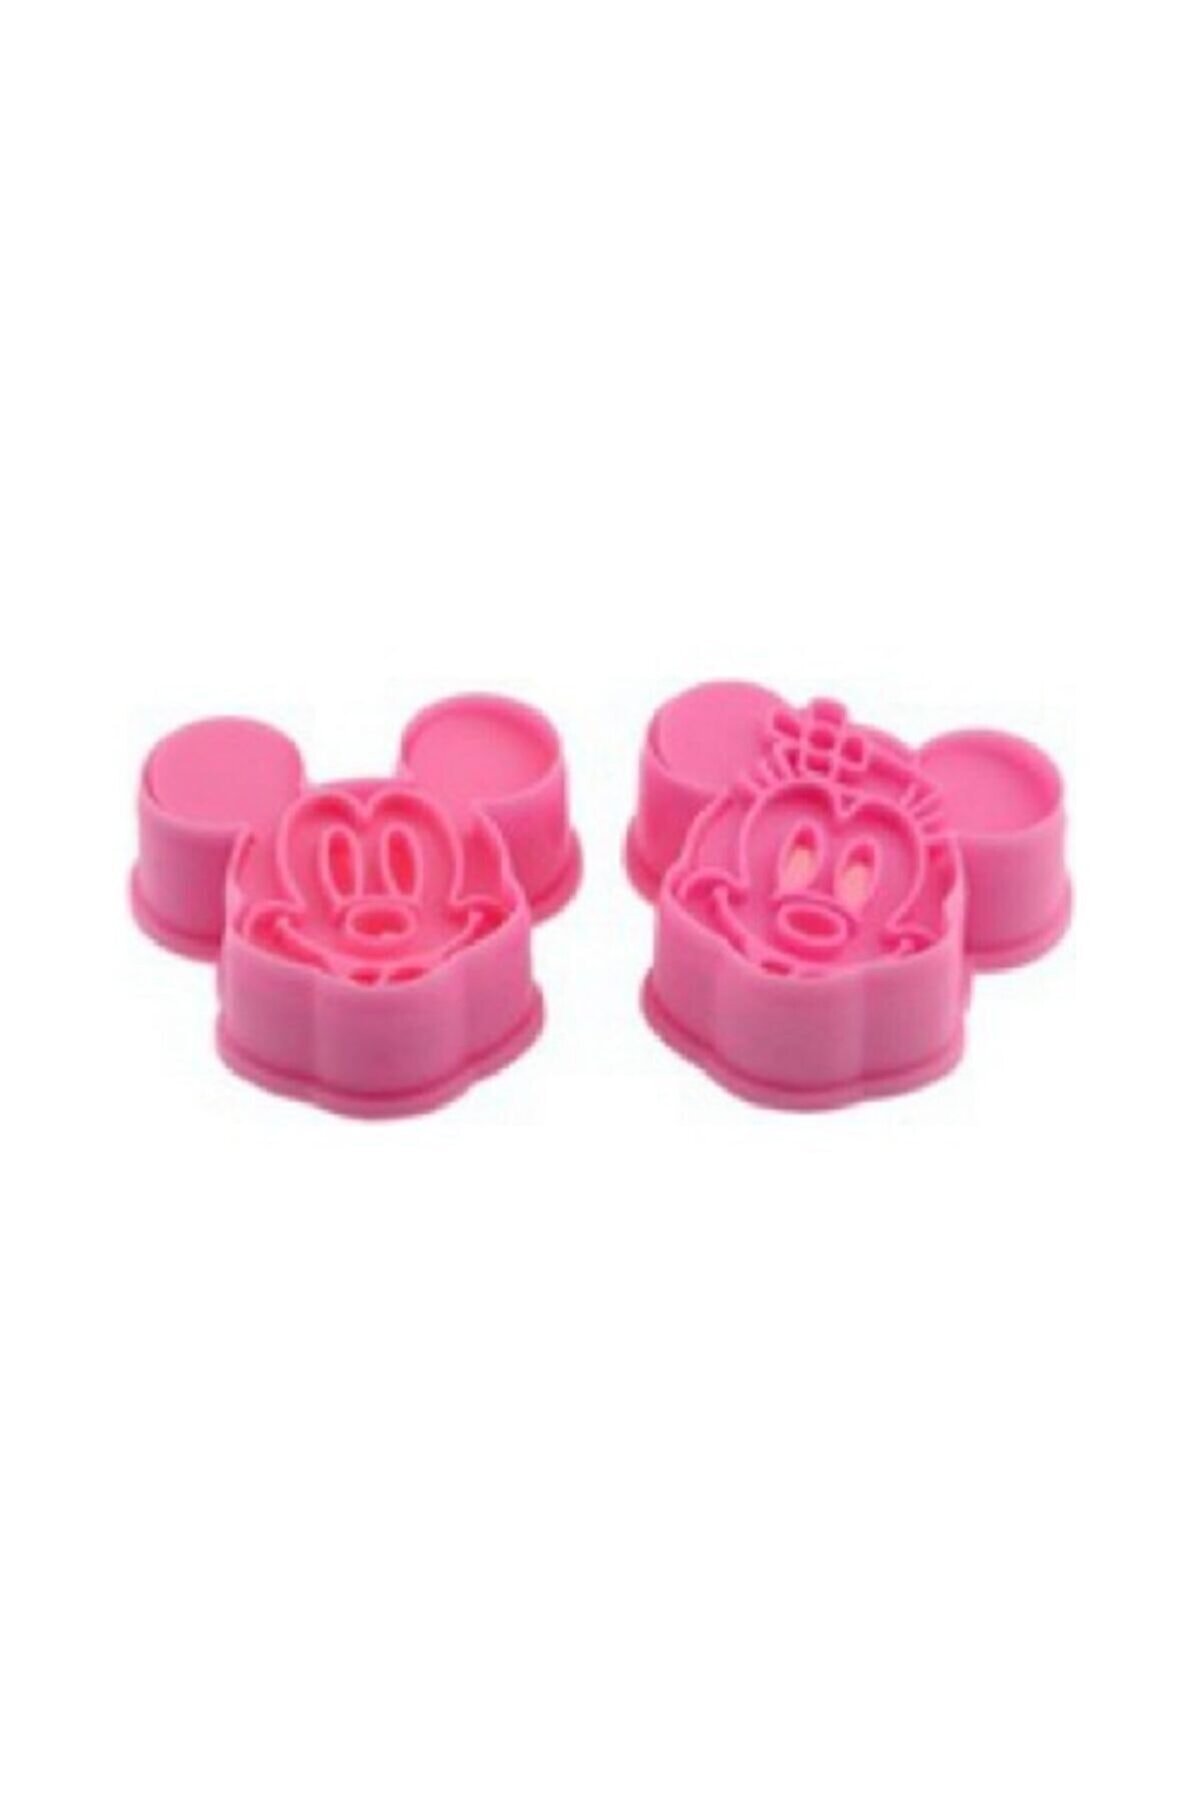 Mickey Ve Minnie Mouse Basmalı Kurabiye Kalıbı  2'li_0